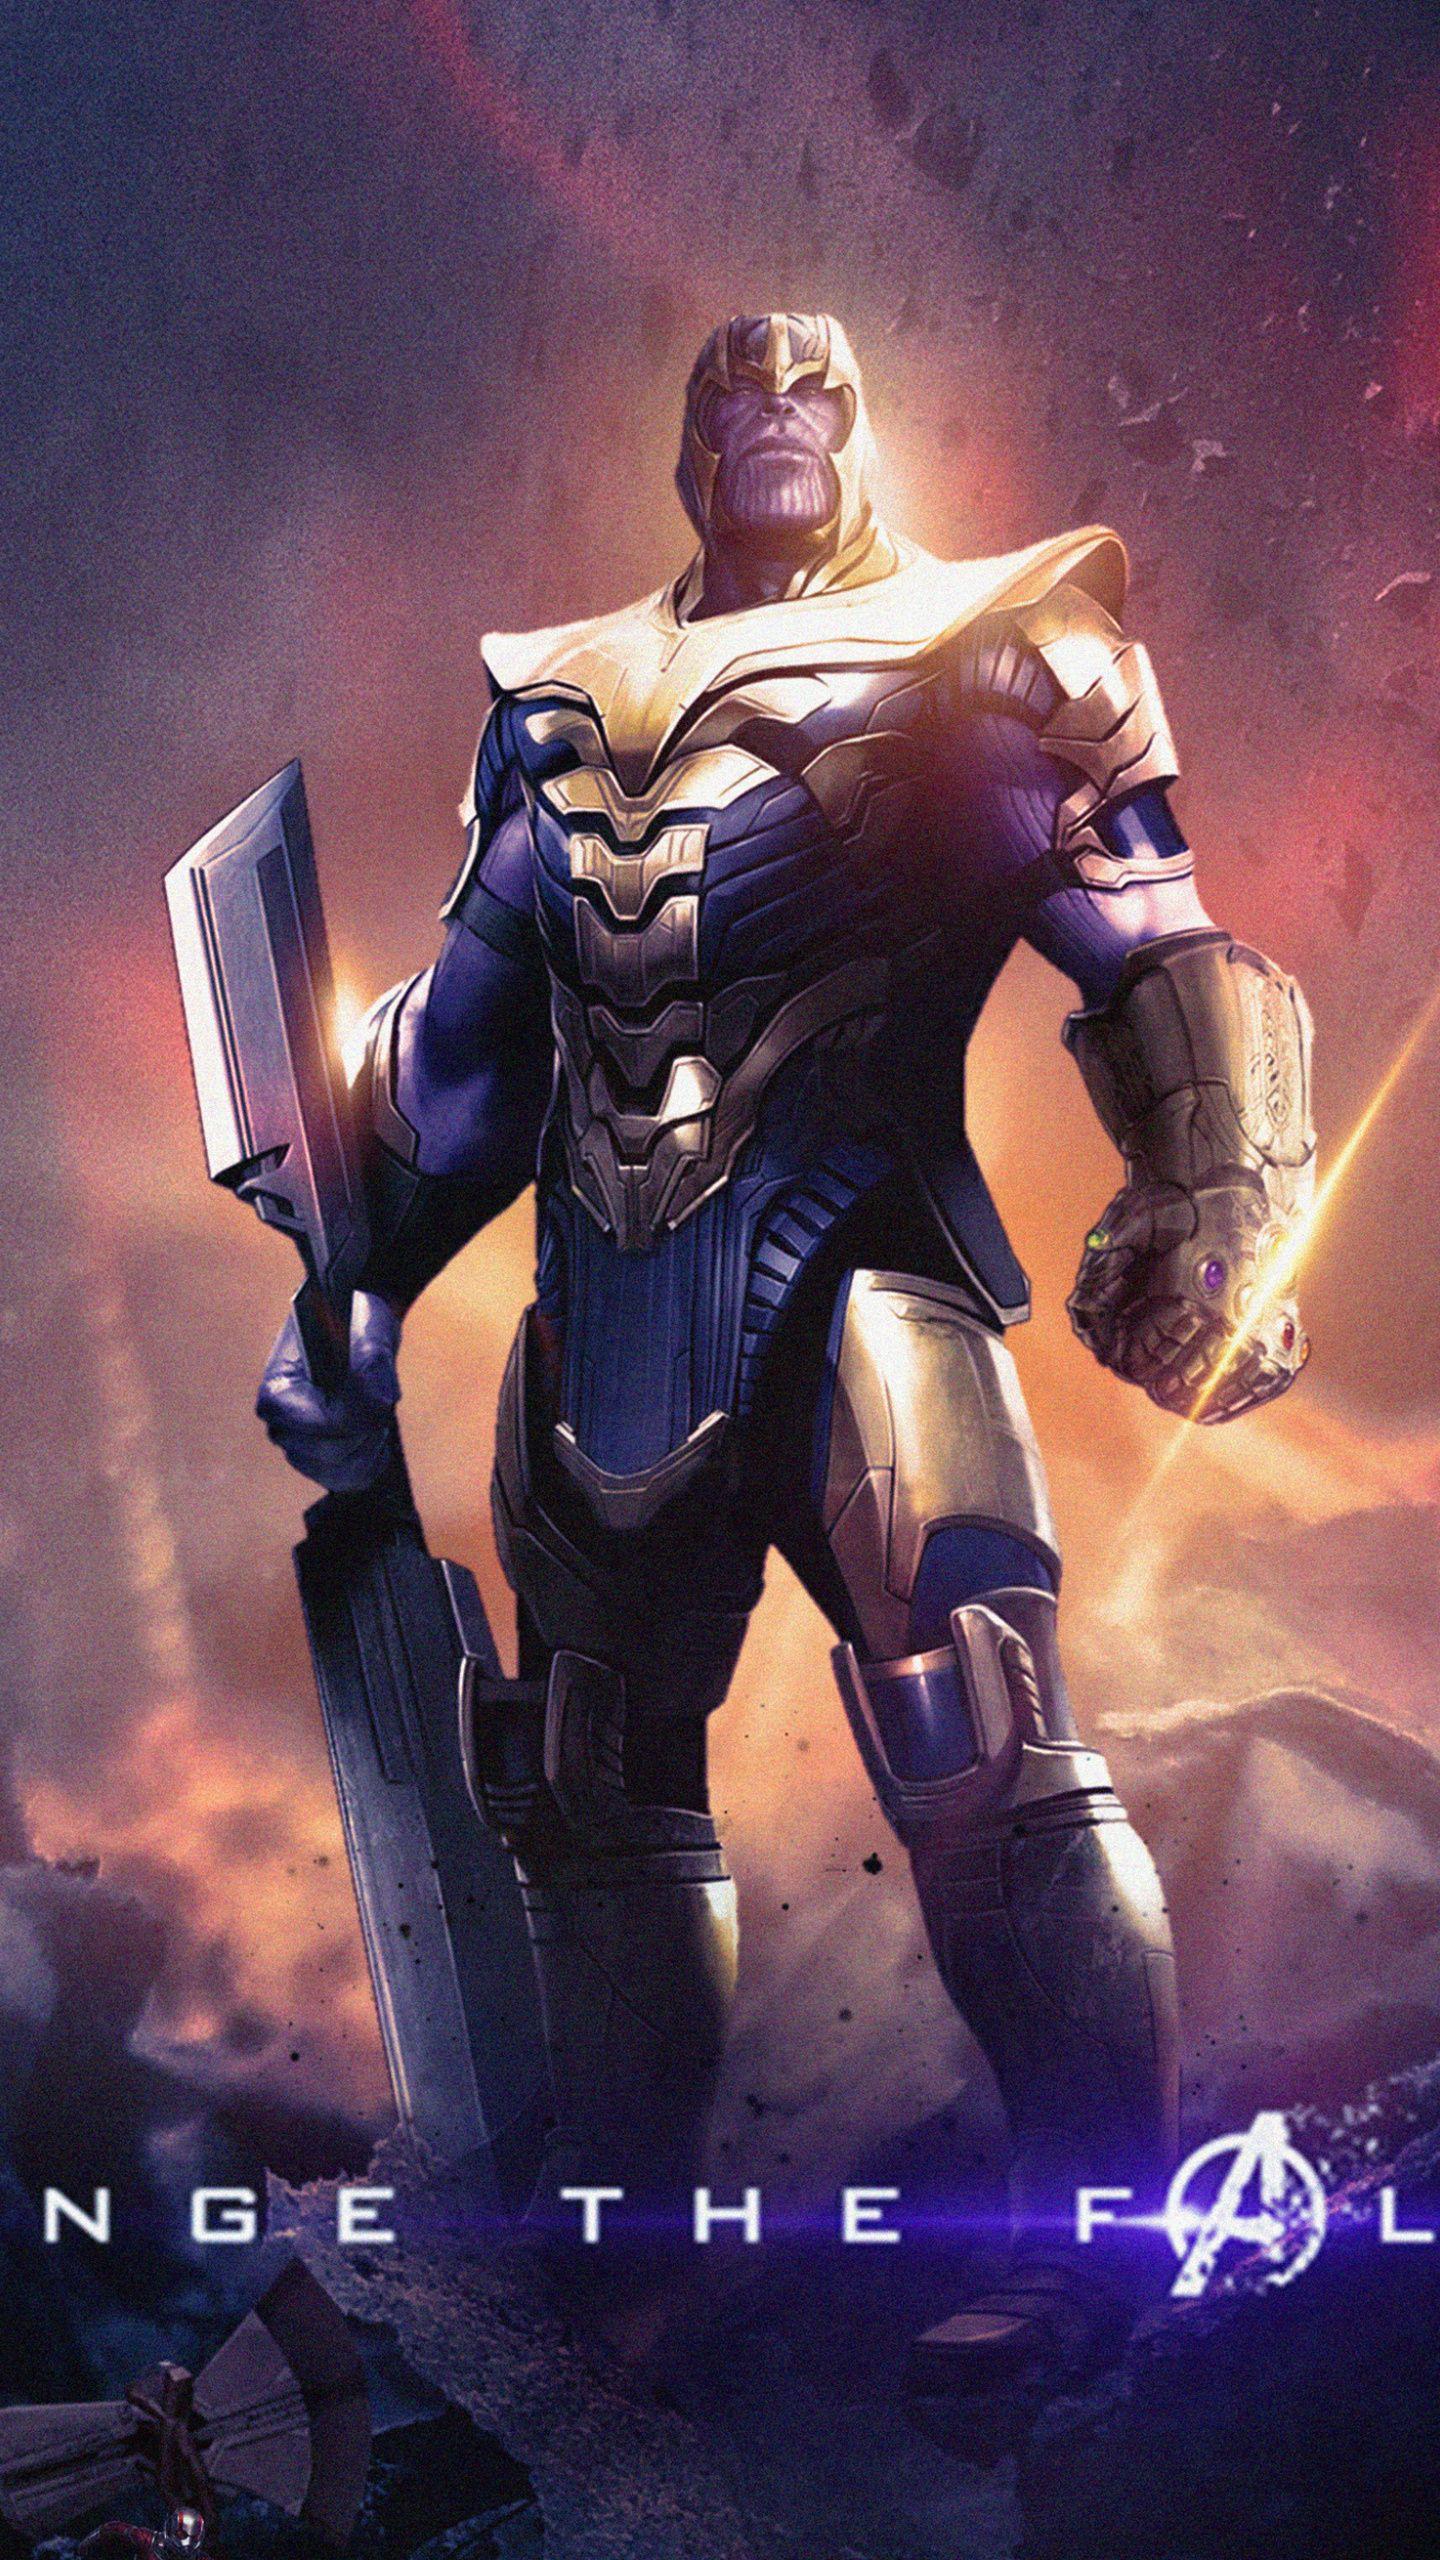 Thanos, Avengers: Endgame, villain wallpaper,. Marvel superheroes, Marvel villains, Marvel comics